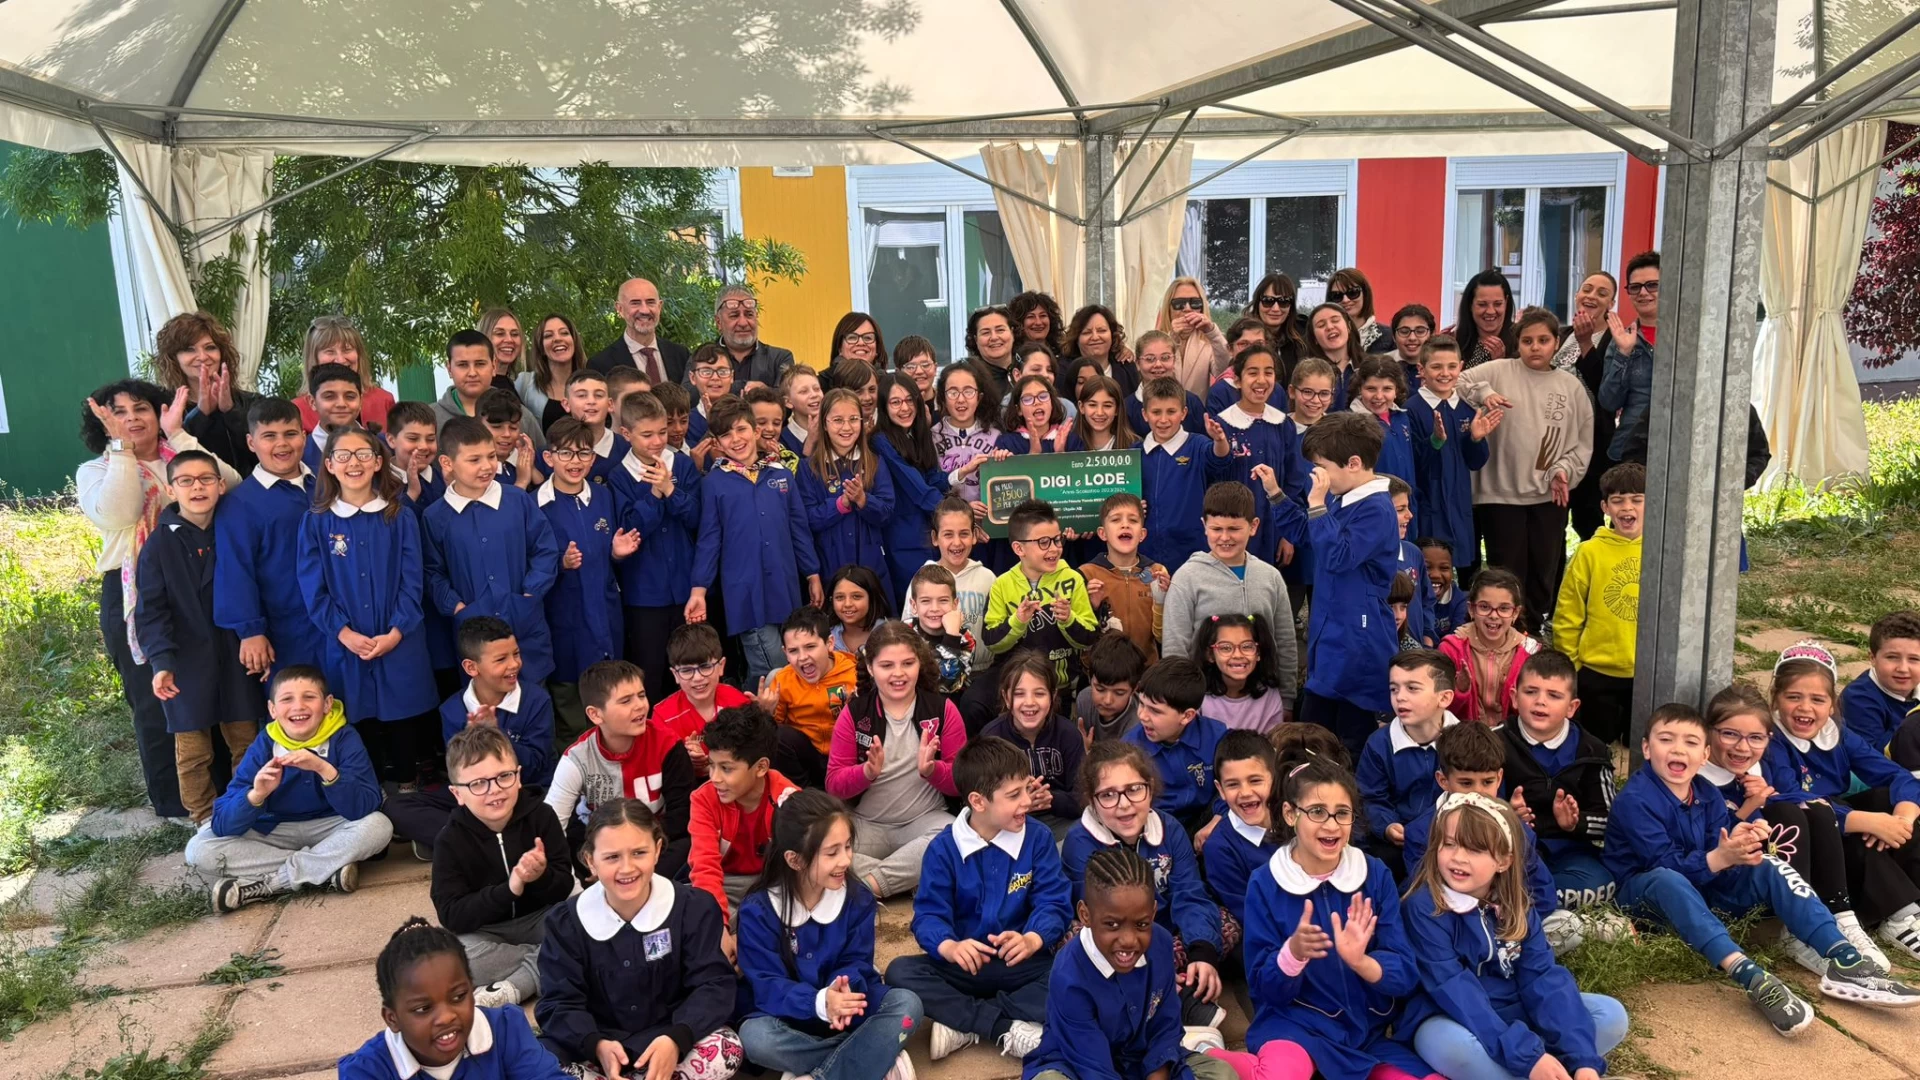 Alla scuola primaria di Pianola in Abruzzo i 2.500 € di Digi e Lode